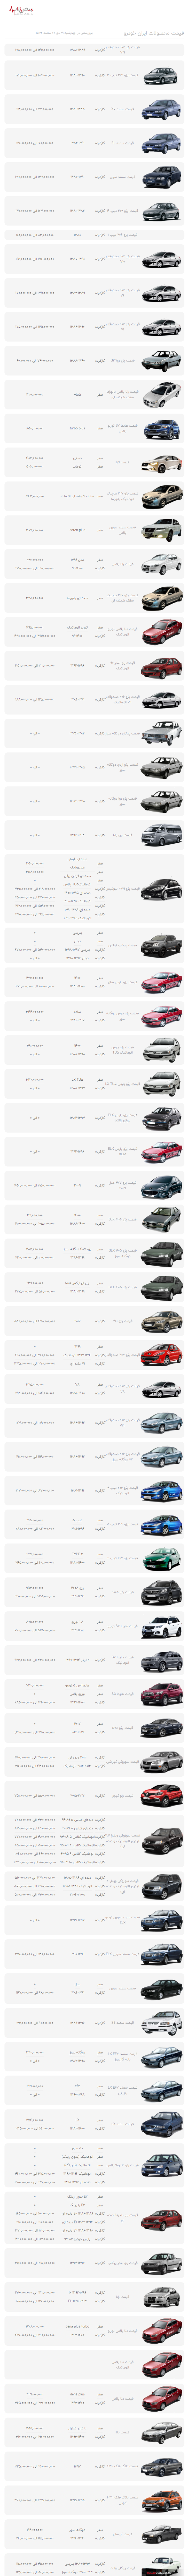 قیمت محصولات ایران خودرو در بازار امروز تهران ۲۹ دی ۱۴۰۰